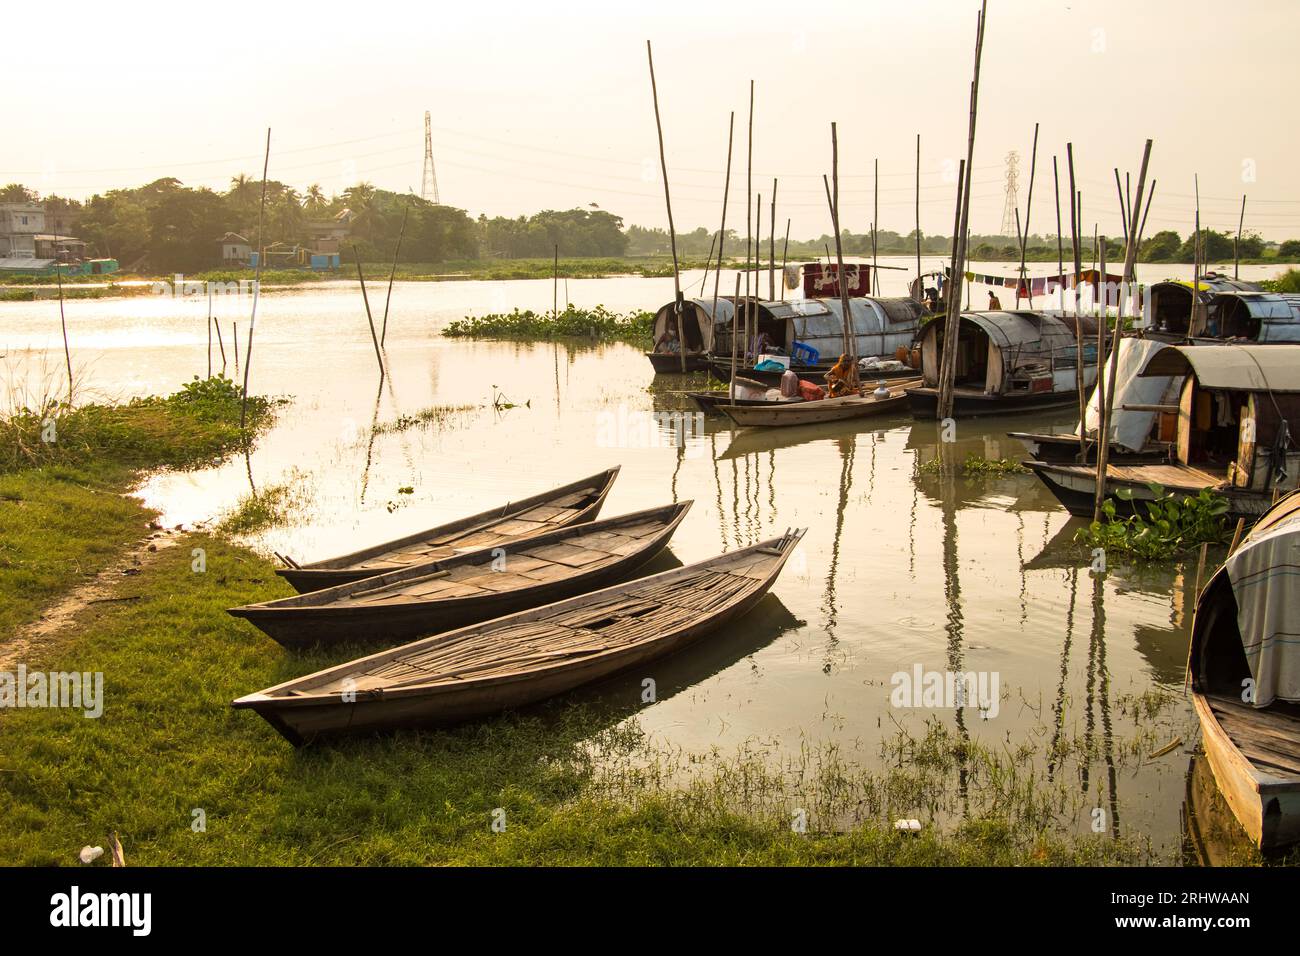 Le mode de vie flottant nomade de la communauté « Bede » Snake Charmers, image capturée le 9 septembre 2022, de Rahitpur, Bangladesh Banque D'Images